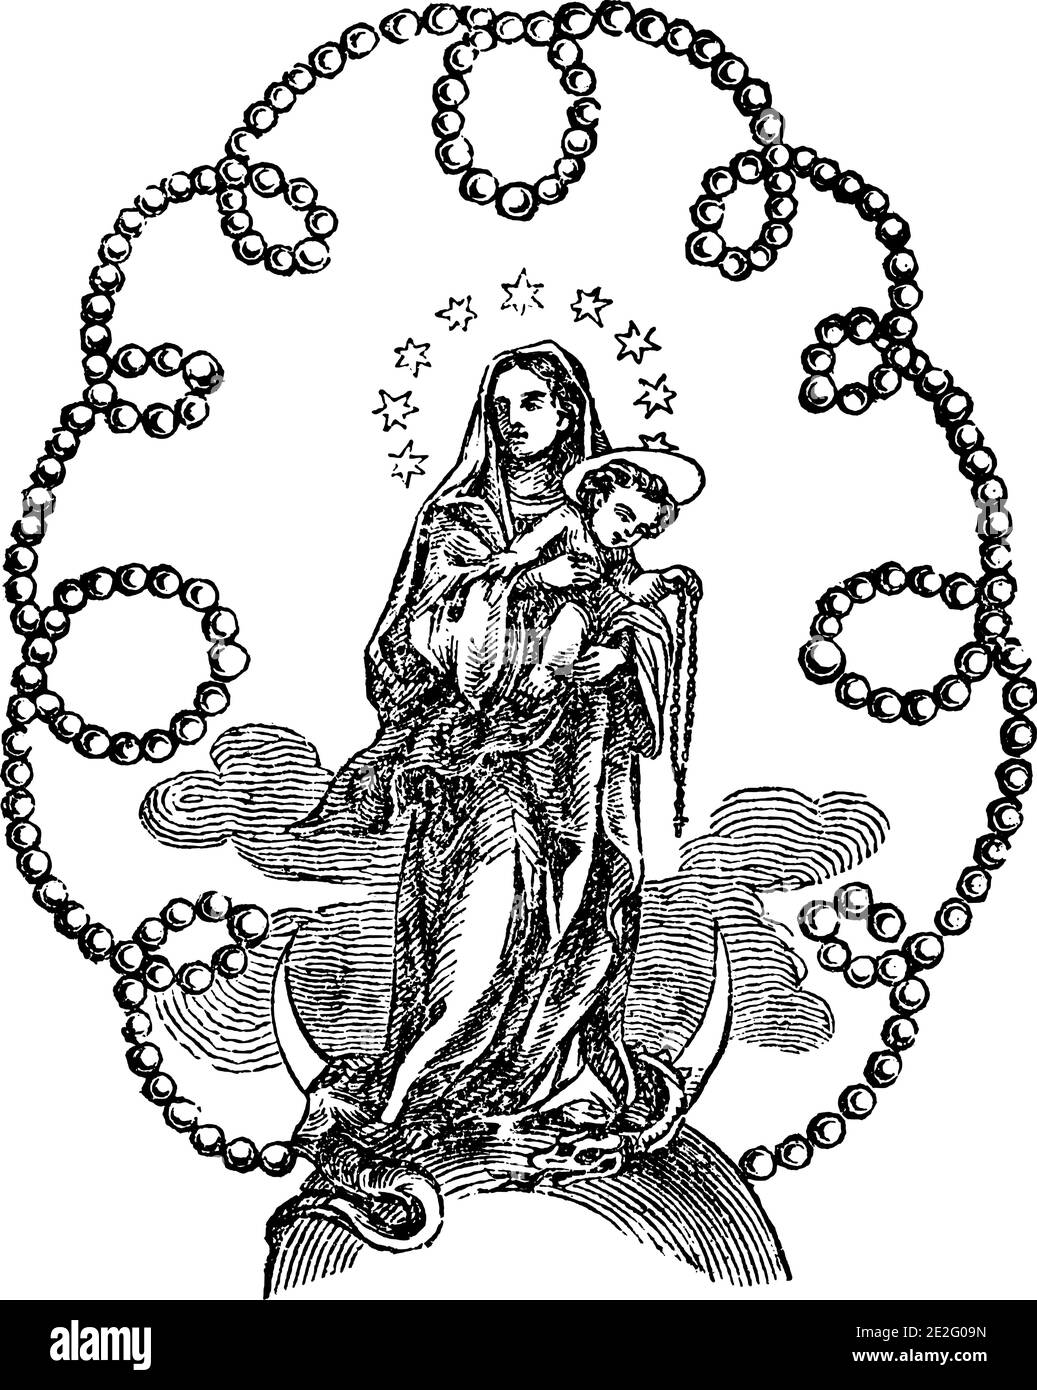 Image ornementale de Madonna ou Vierge Marie tenant bébé Jésus Christ entouré de perles ornement.Antique vintage biblique chrétienne gravure ou dessin religieux. Illustration de Vecteur